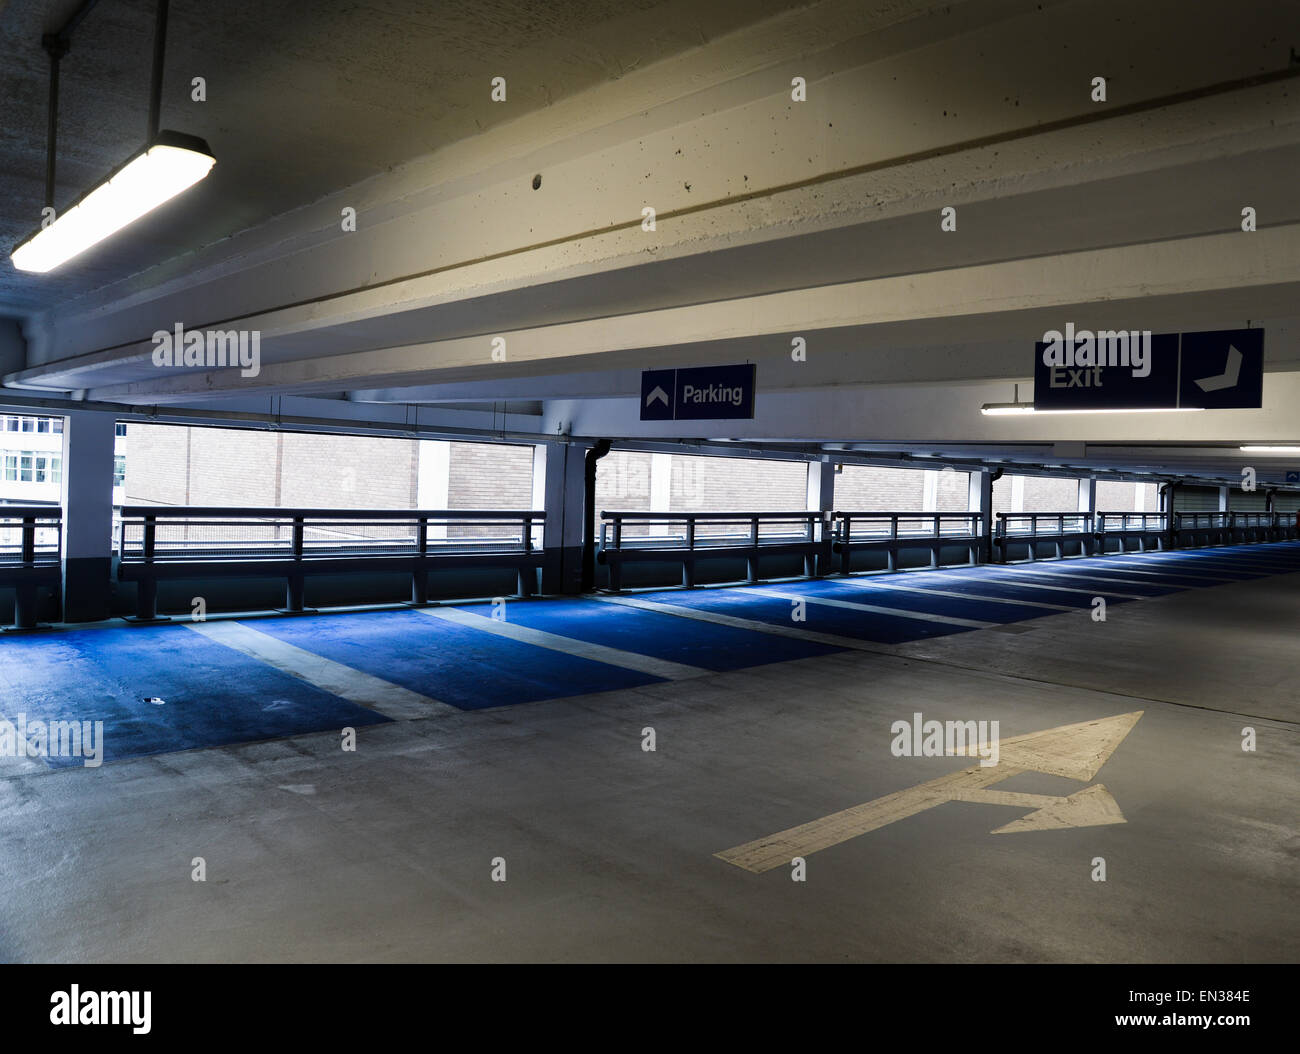 Des aires de stationnement vide dans un parking à plusieurs étages Banque D'Images